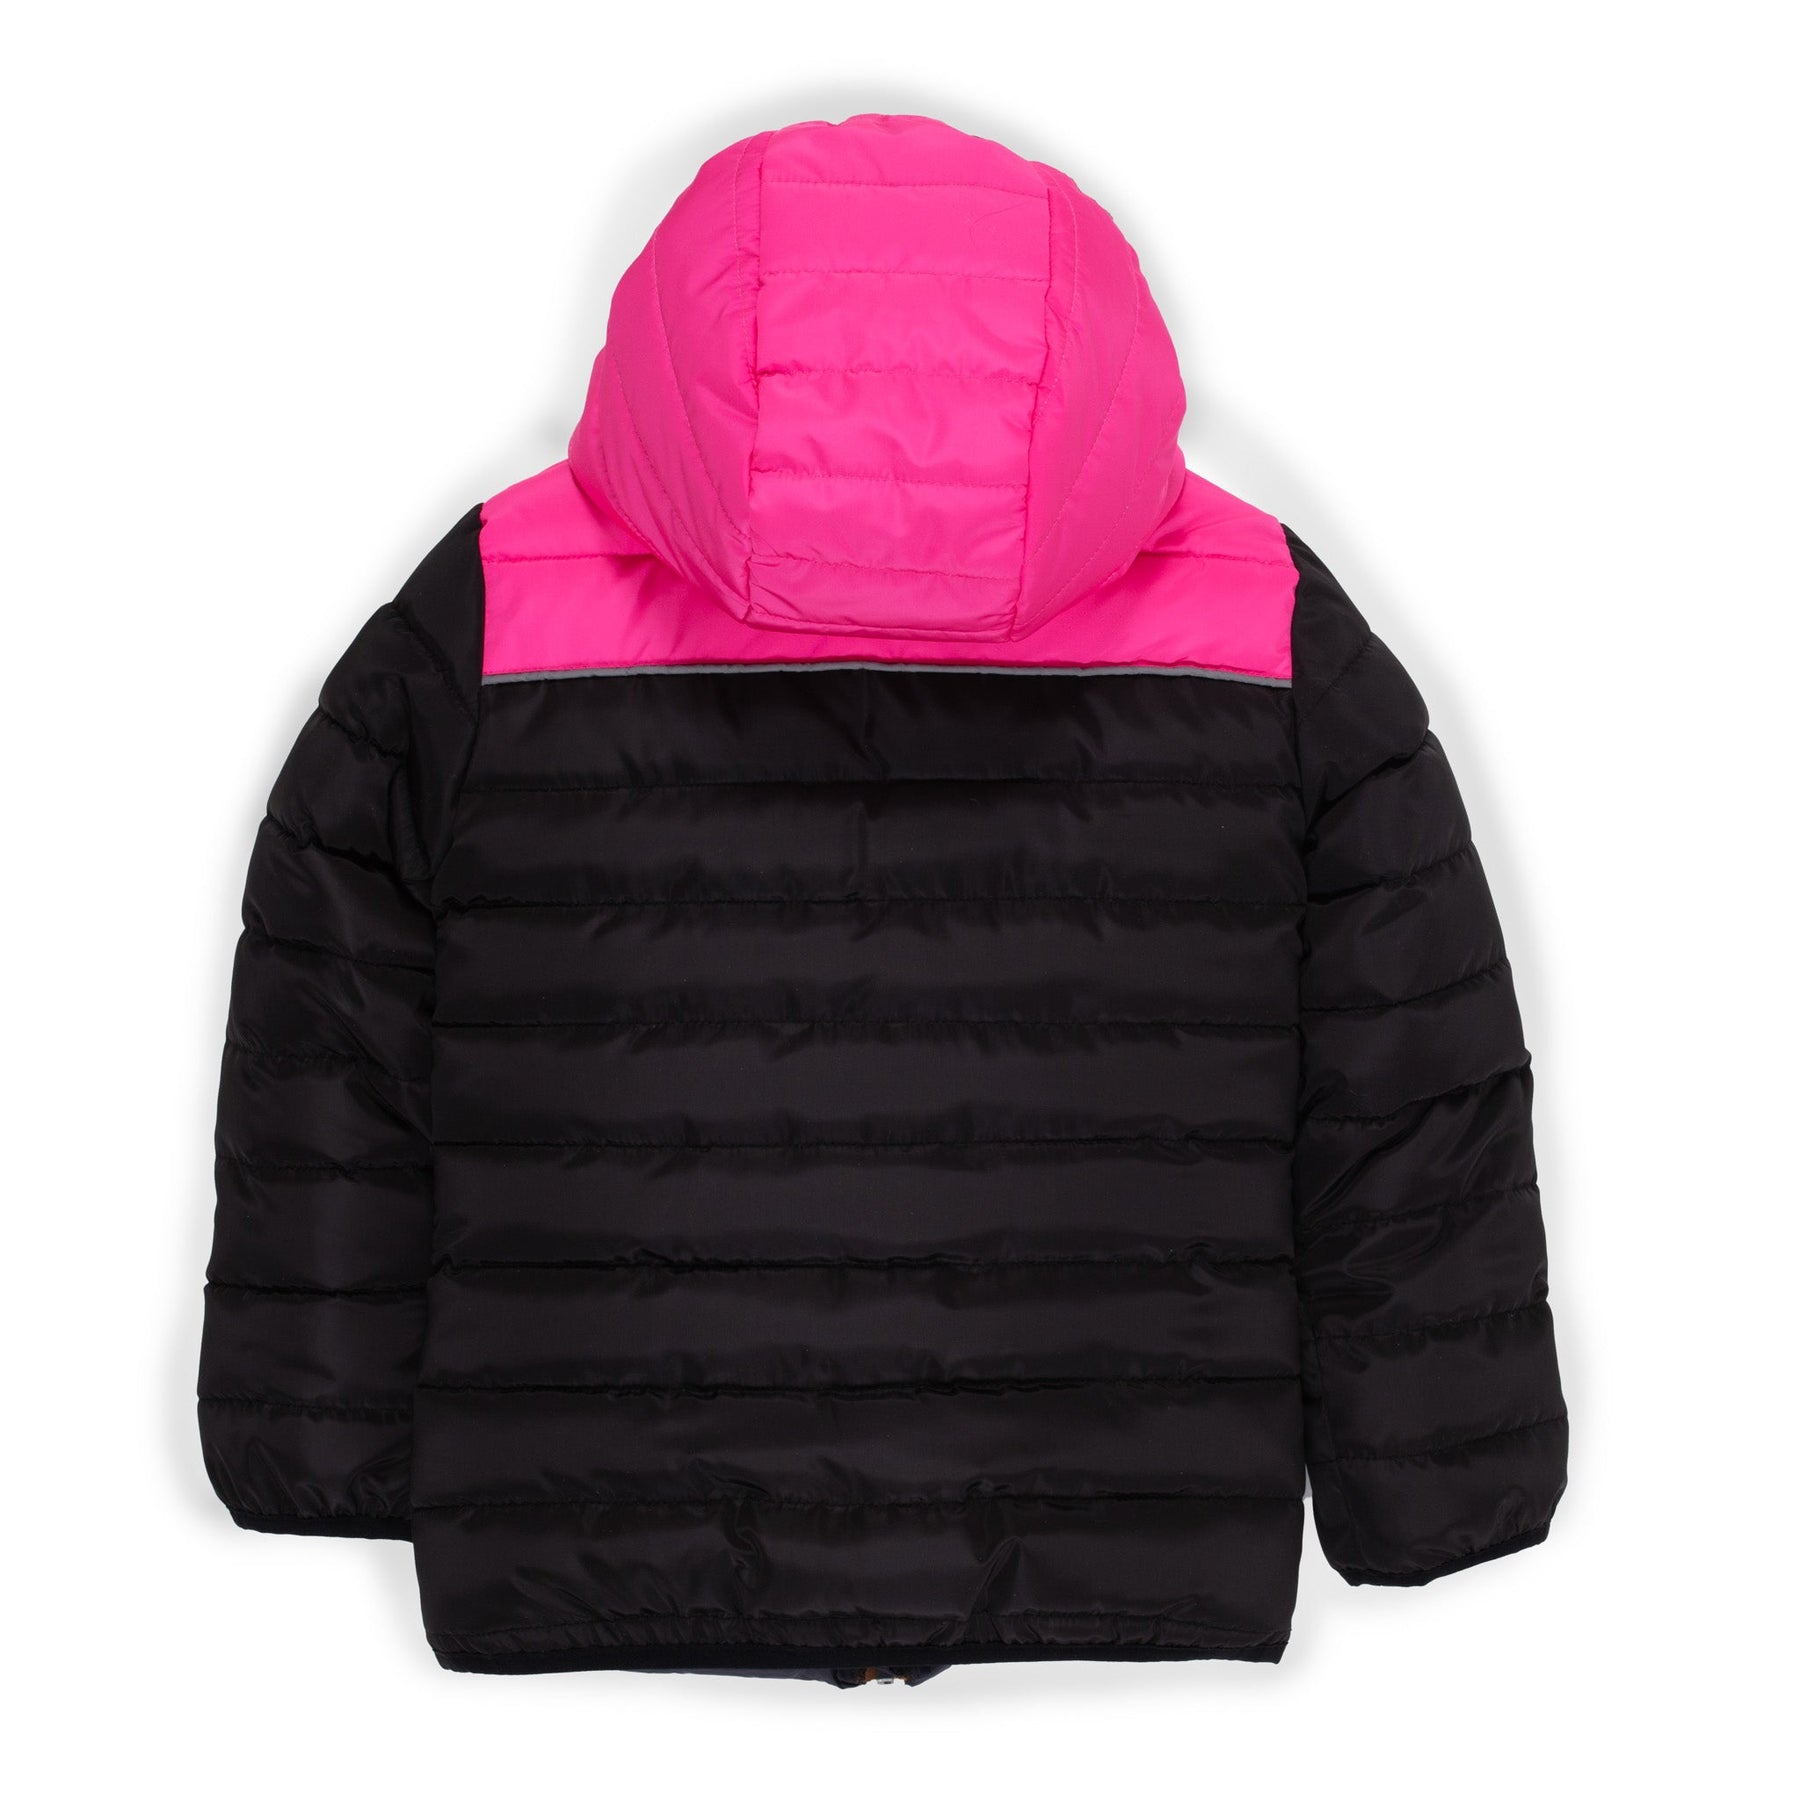 Manteau matelassé pour enfant fille par Nanö | F23M1250 Fuchsia | Boutique Flos, vêtements mode pour bébés et enfants